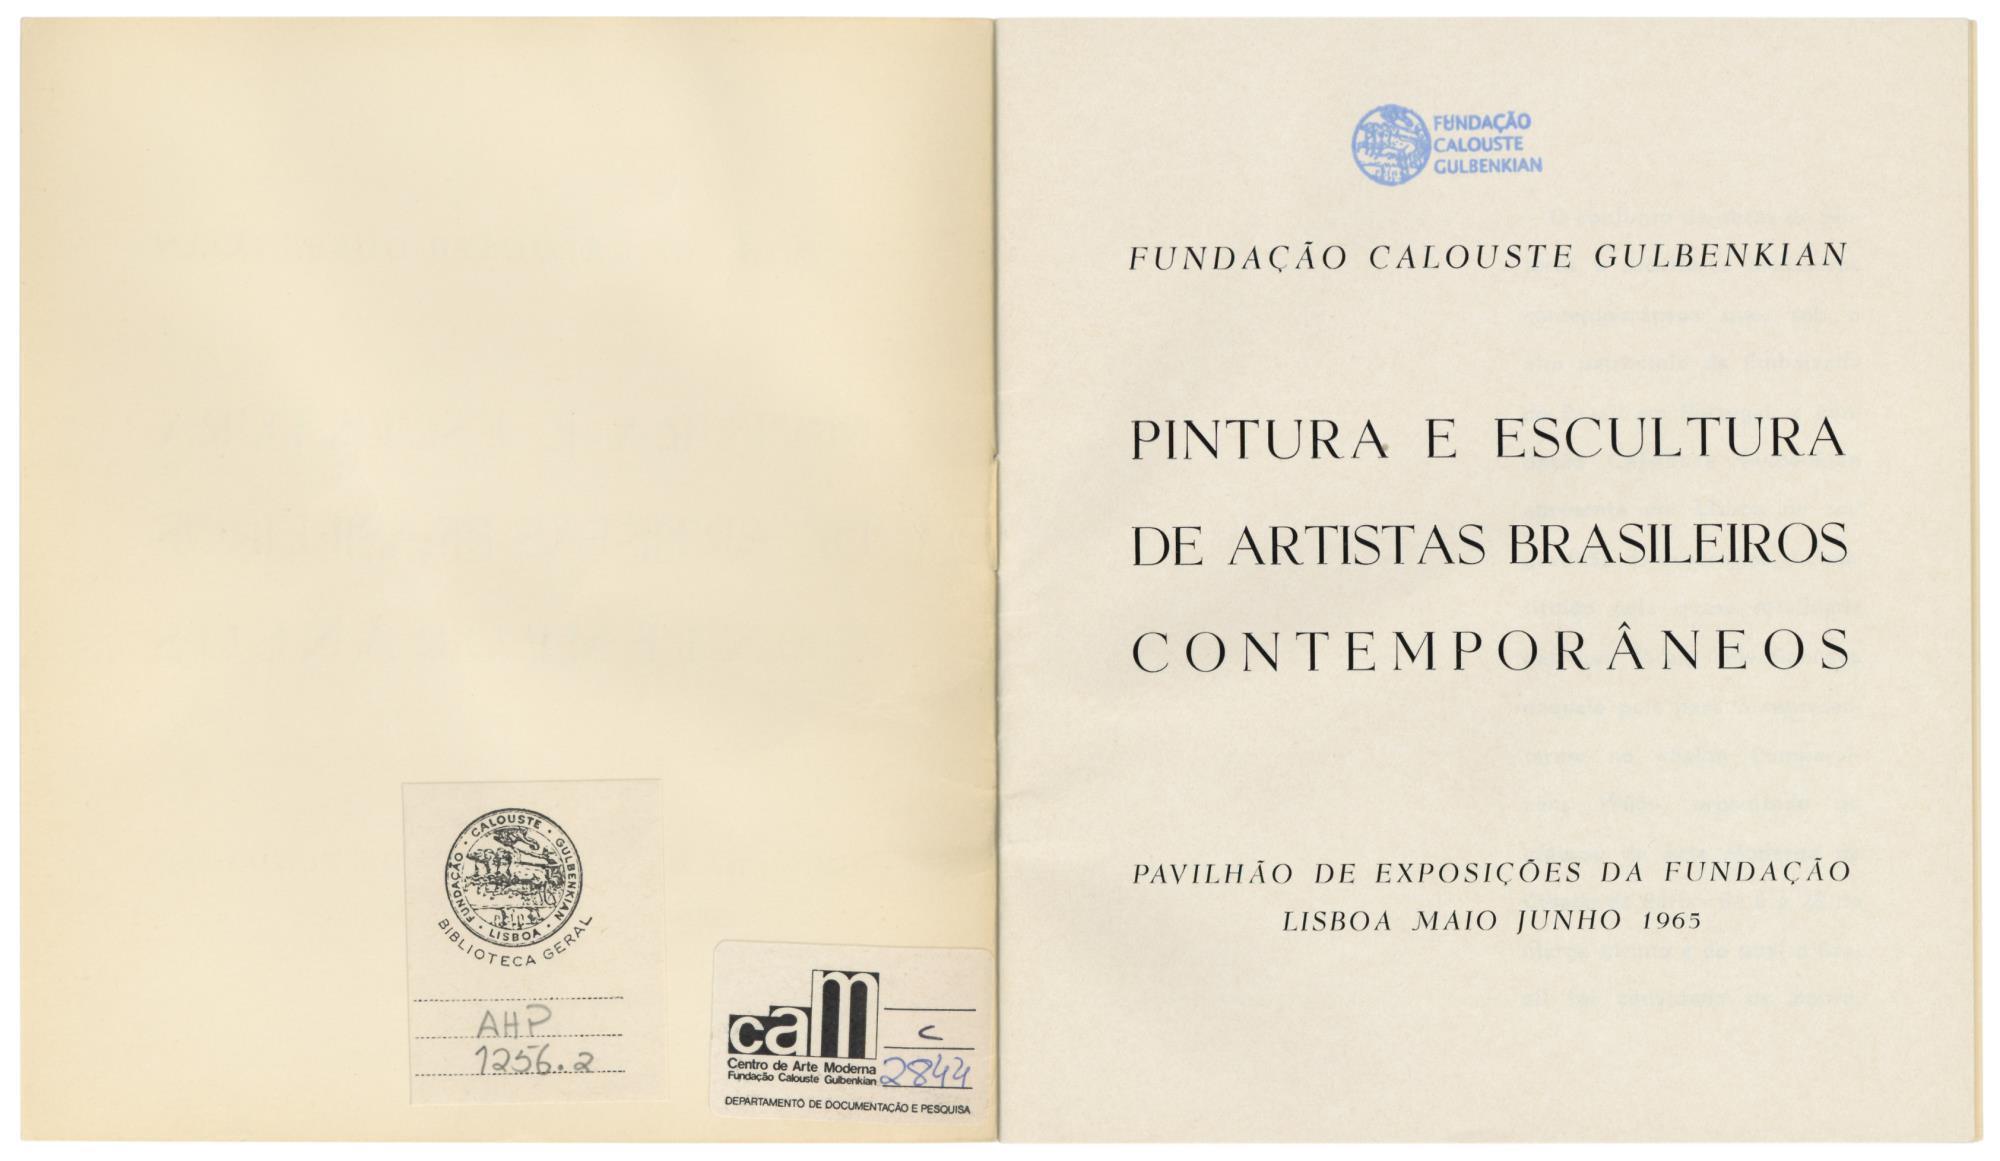 1965_Pint_Esc__Artistas_Bras_catalogo_spread1_AHP1256.2